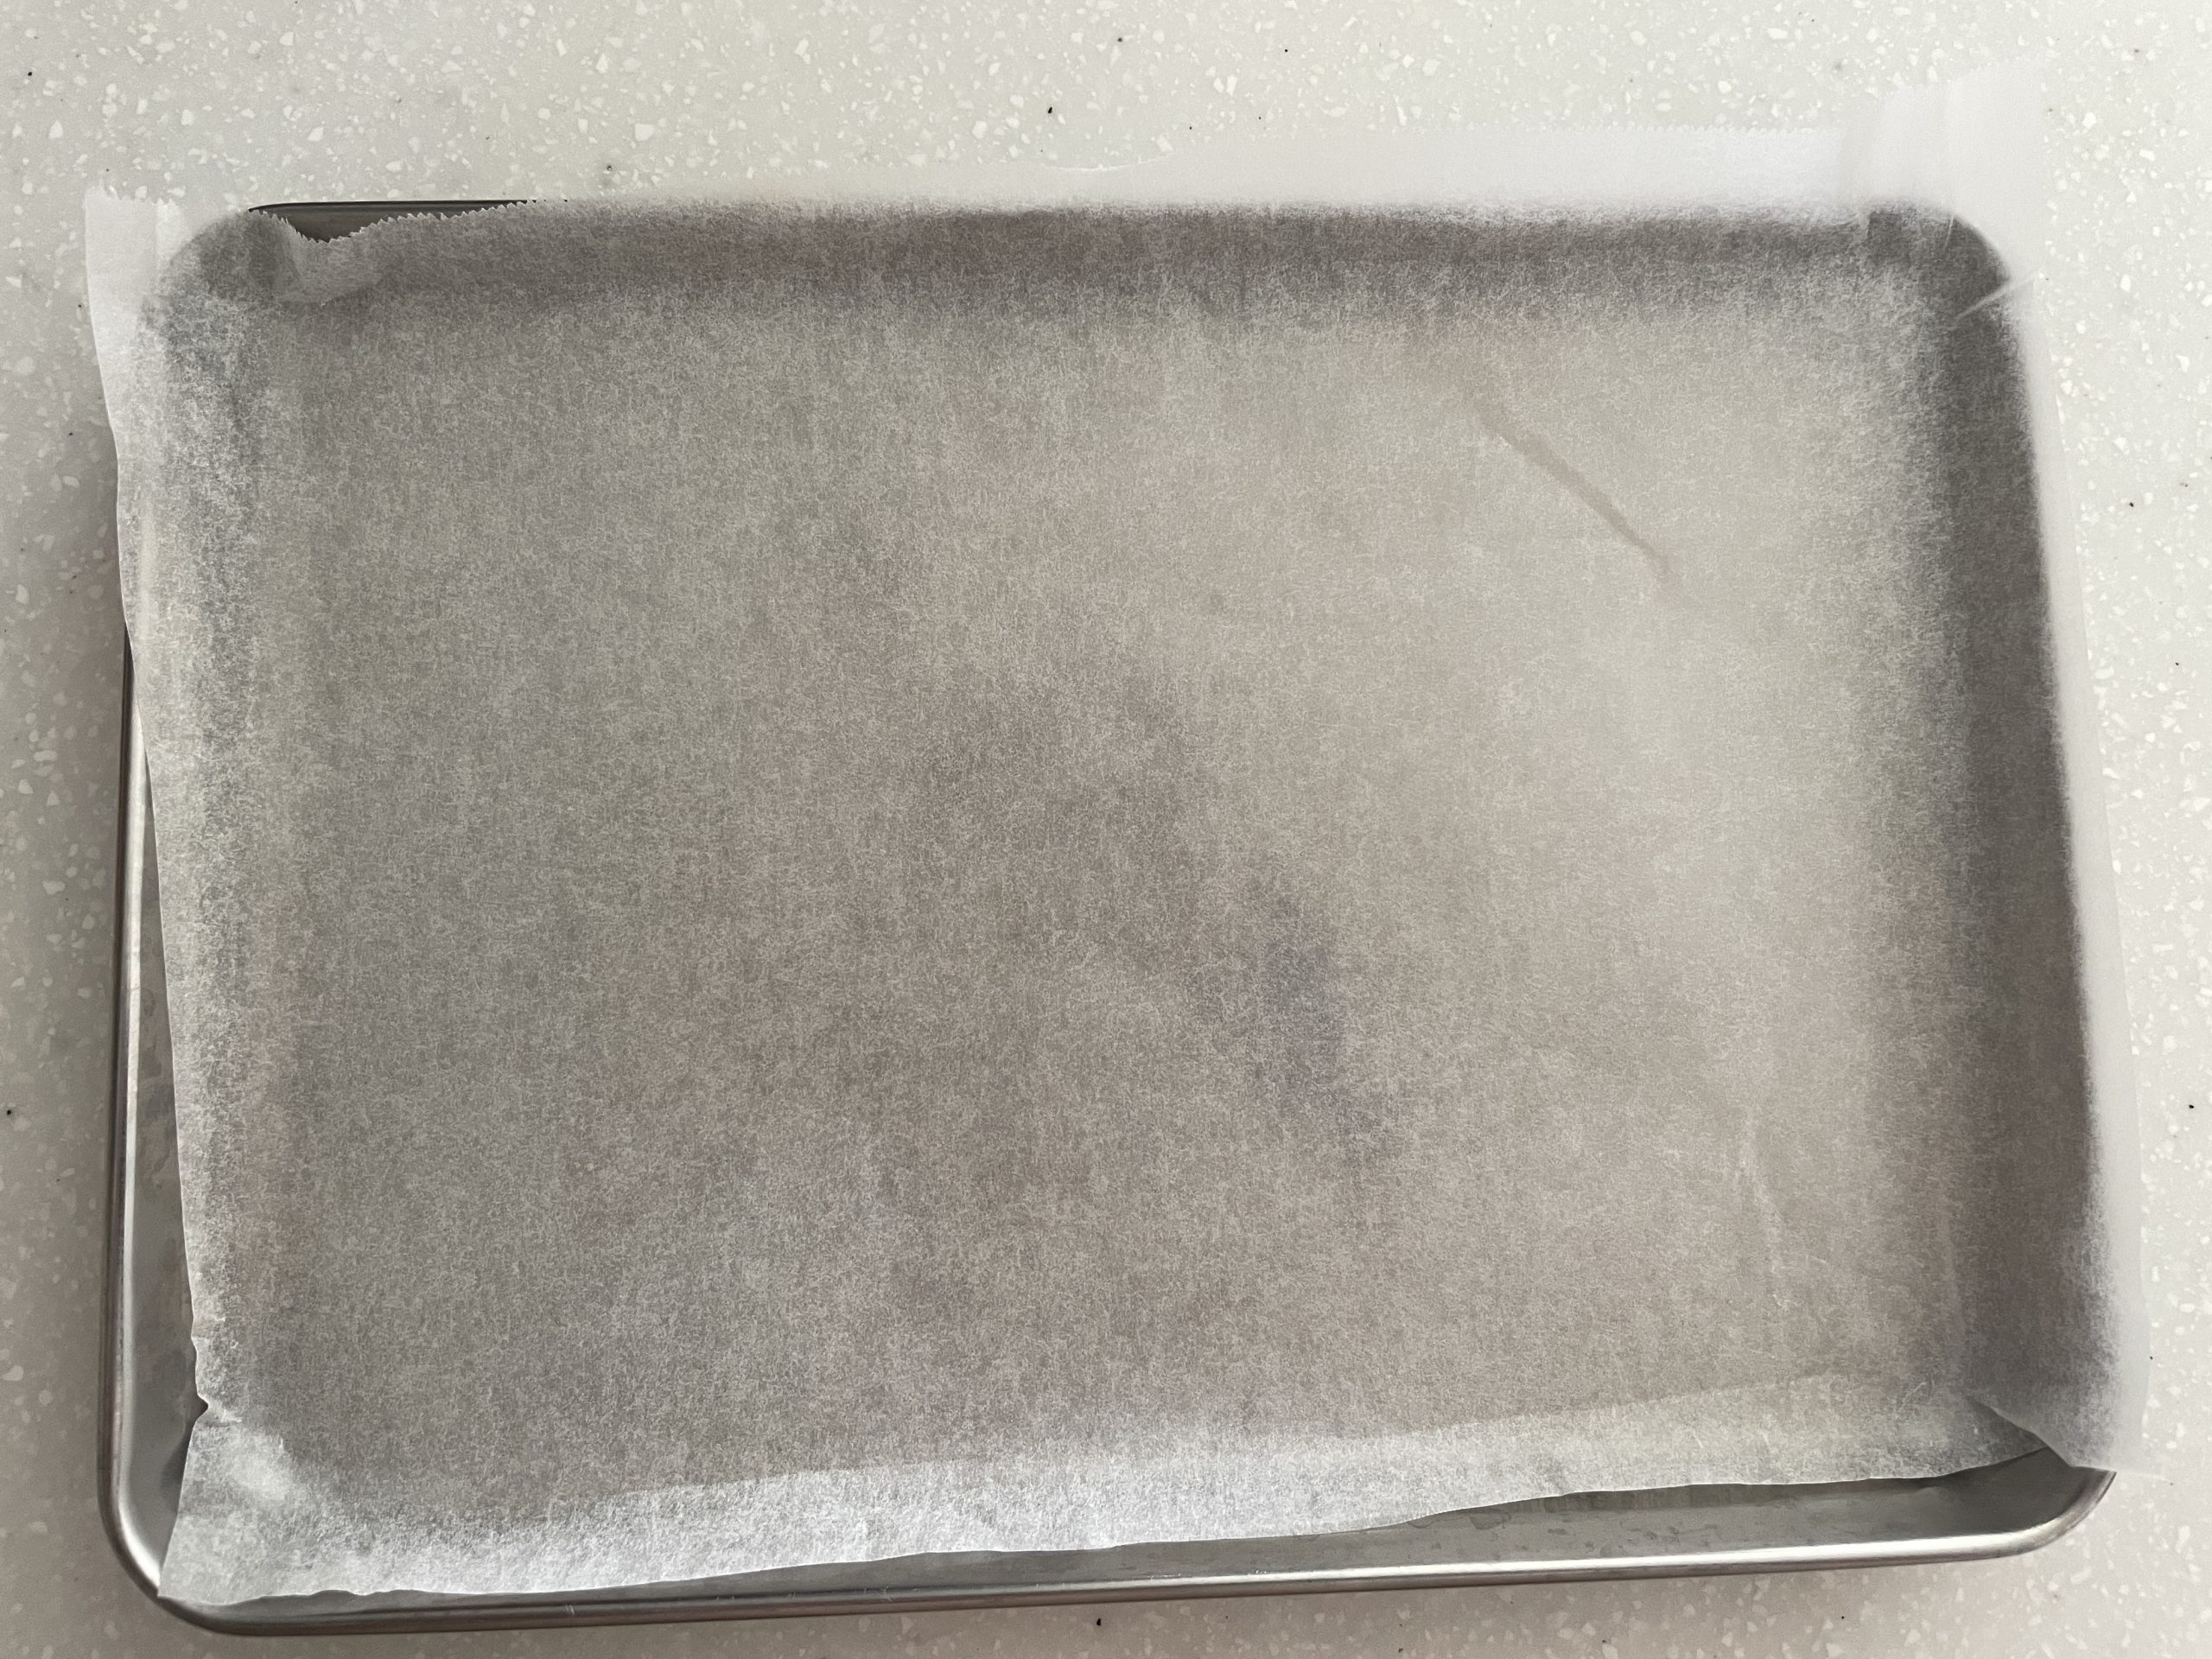 トースター用の鉄板にアルミ、またはクッキングシートをひいておく。